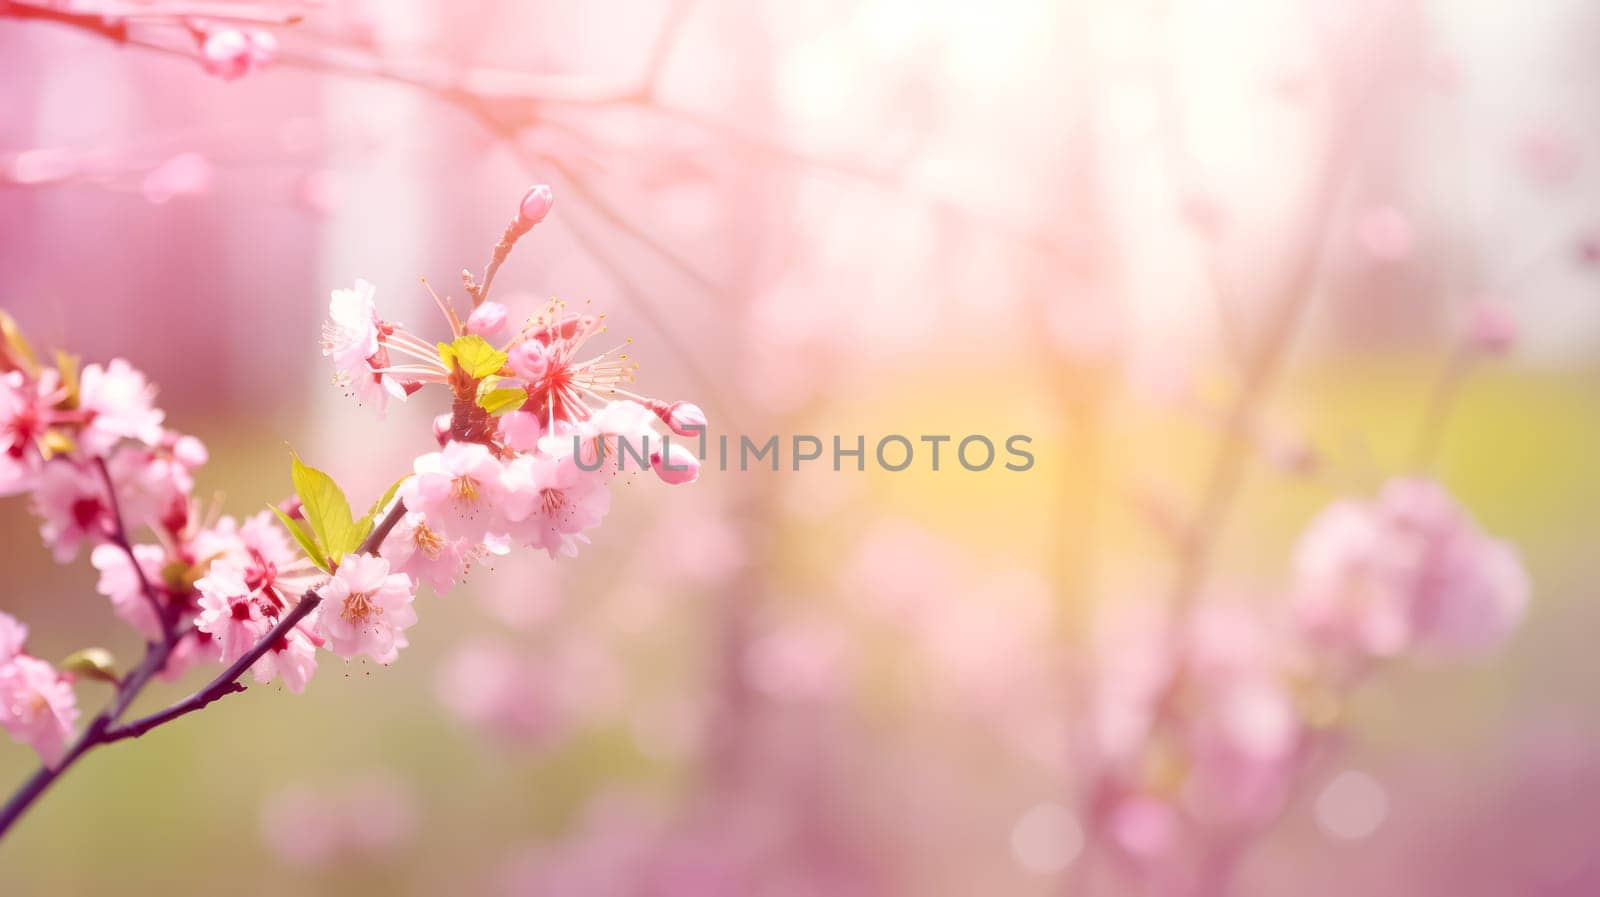 Exquisite pink peach blossoms flourishing in a vibrant garden by Alla_Morozova93